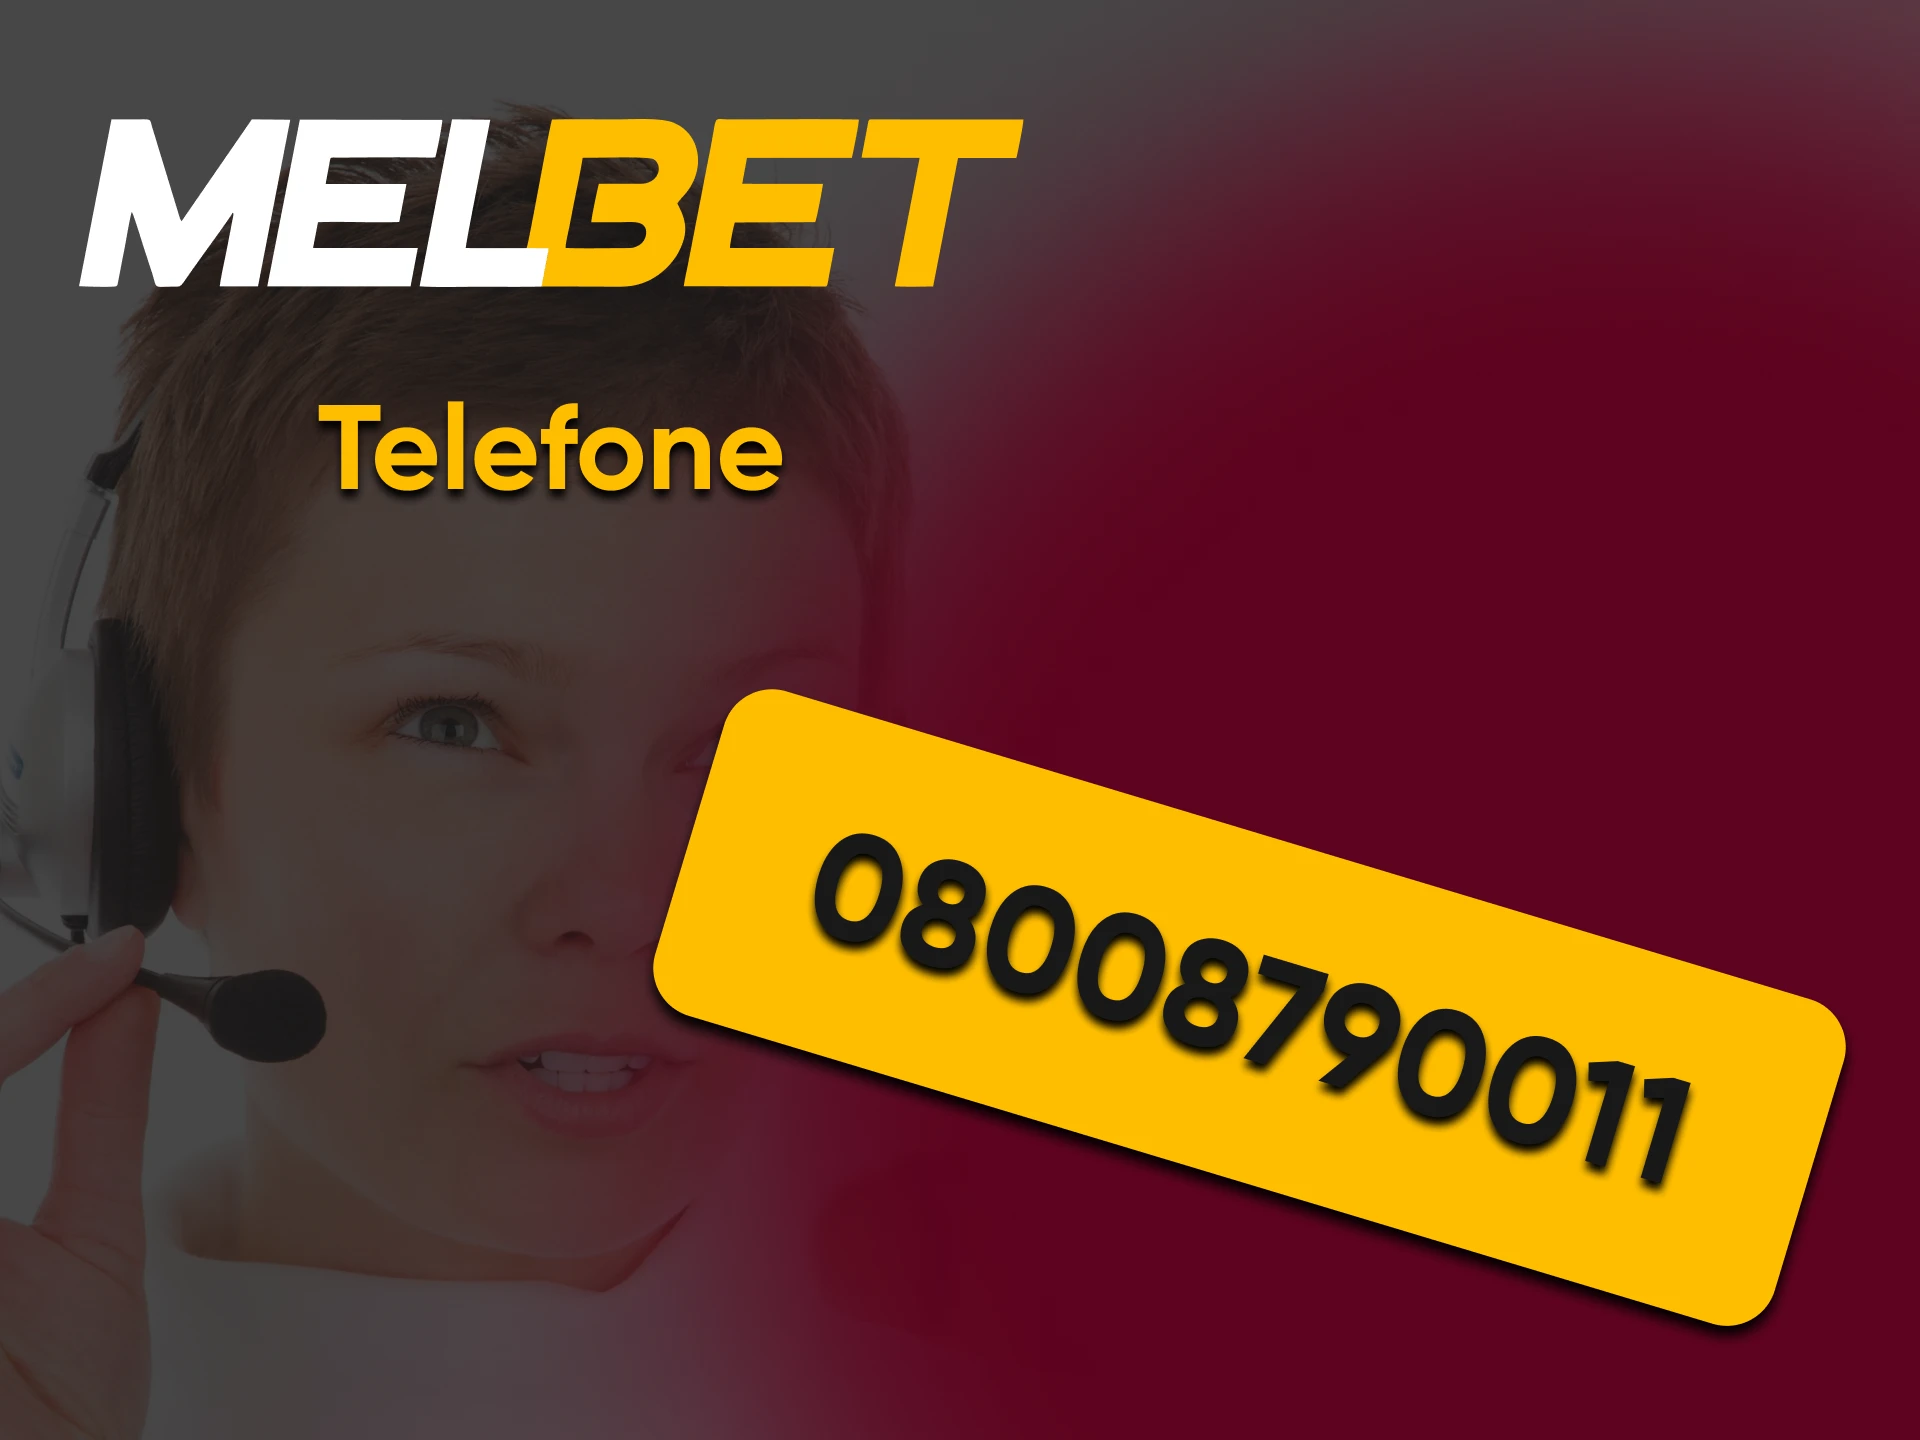 Por conexão móvel, você também pode entrar em contato com o suporte técnico da Melbet.